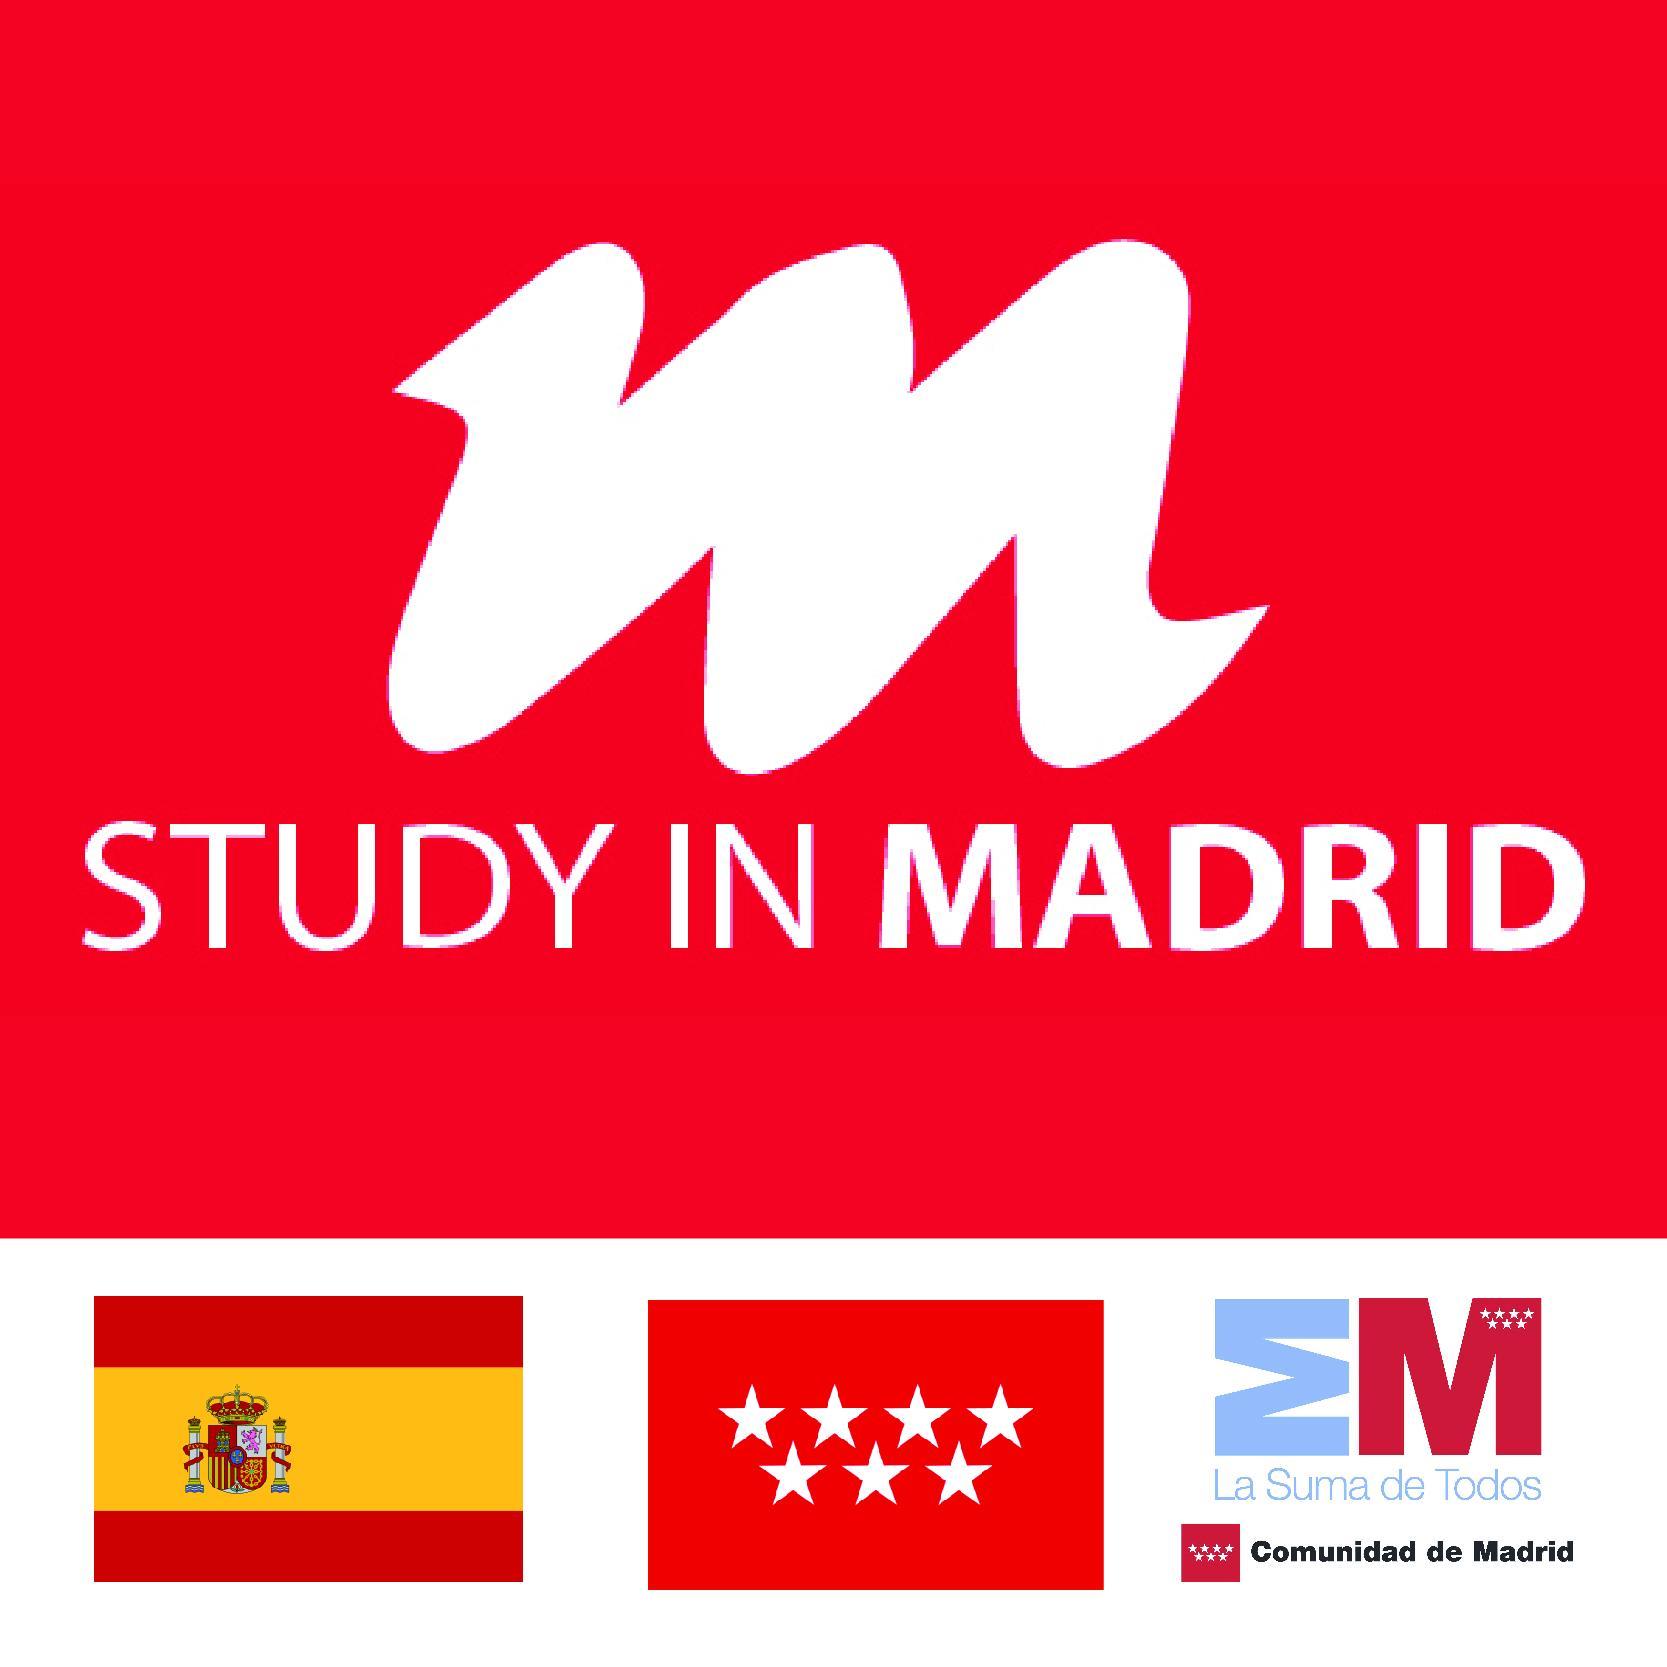 Portal de promoción del sistema madrileño de educación superior para el fomento de atracción de estudiantes internacionales a la Comunidad de Madrid